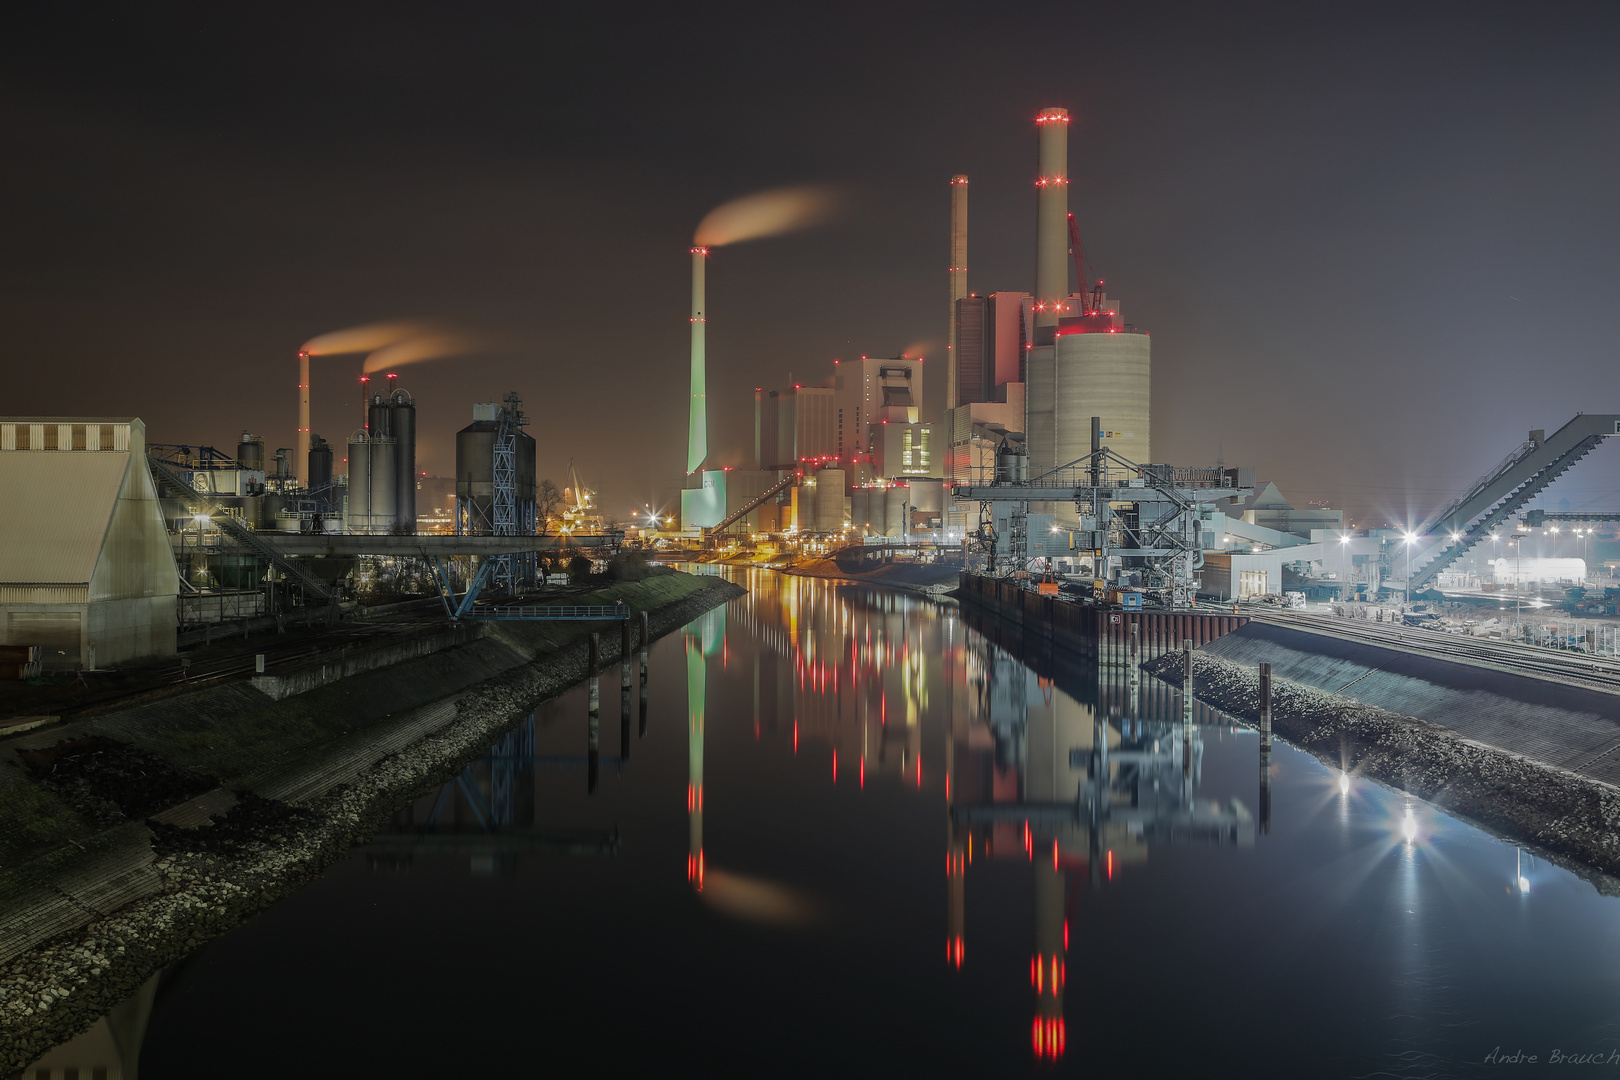 Großkraftwerk Mannheim bei Nacht